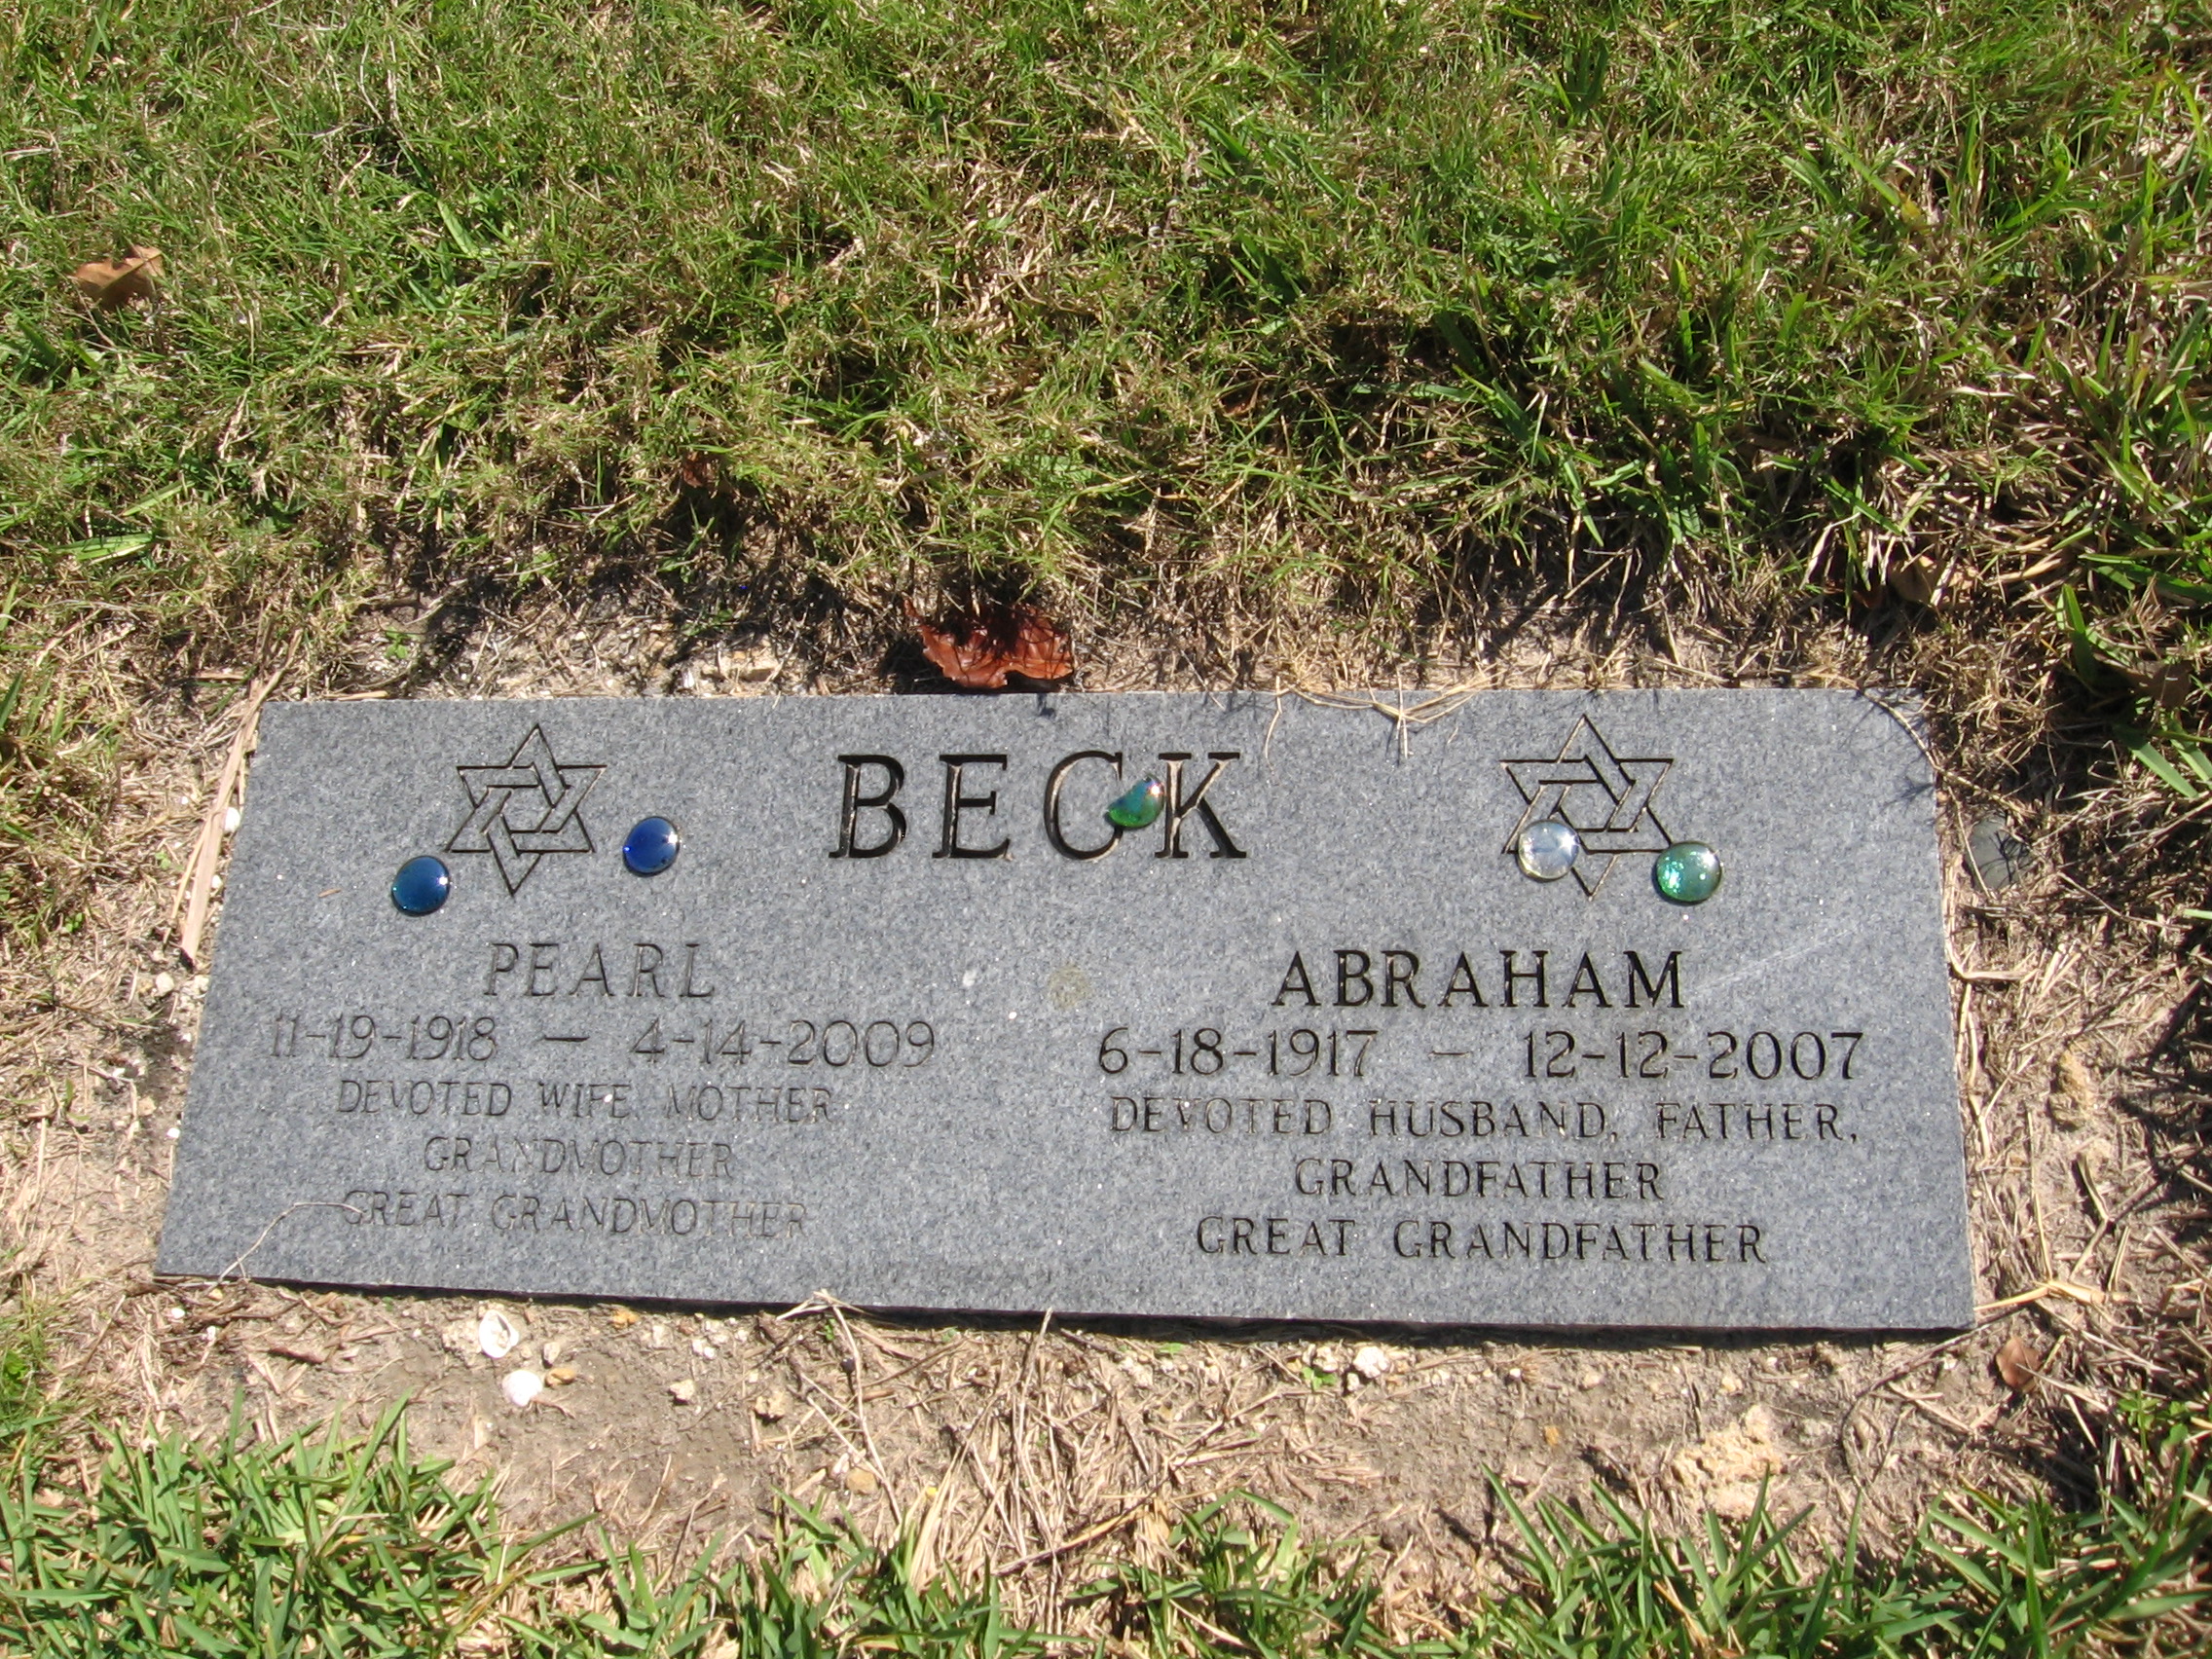 Abraham Beck